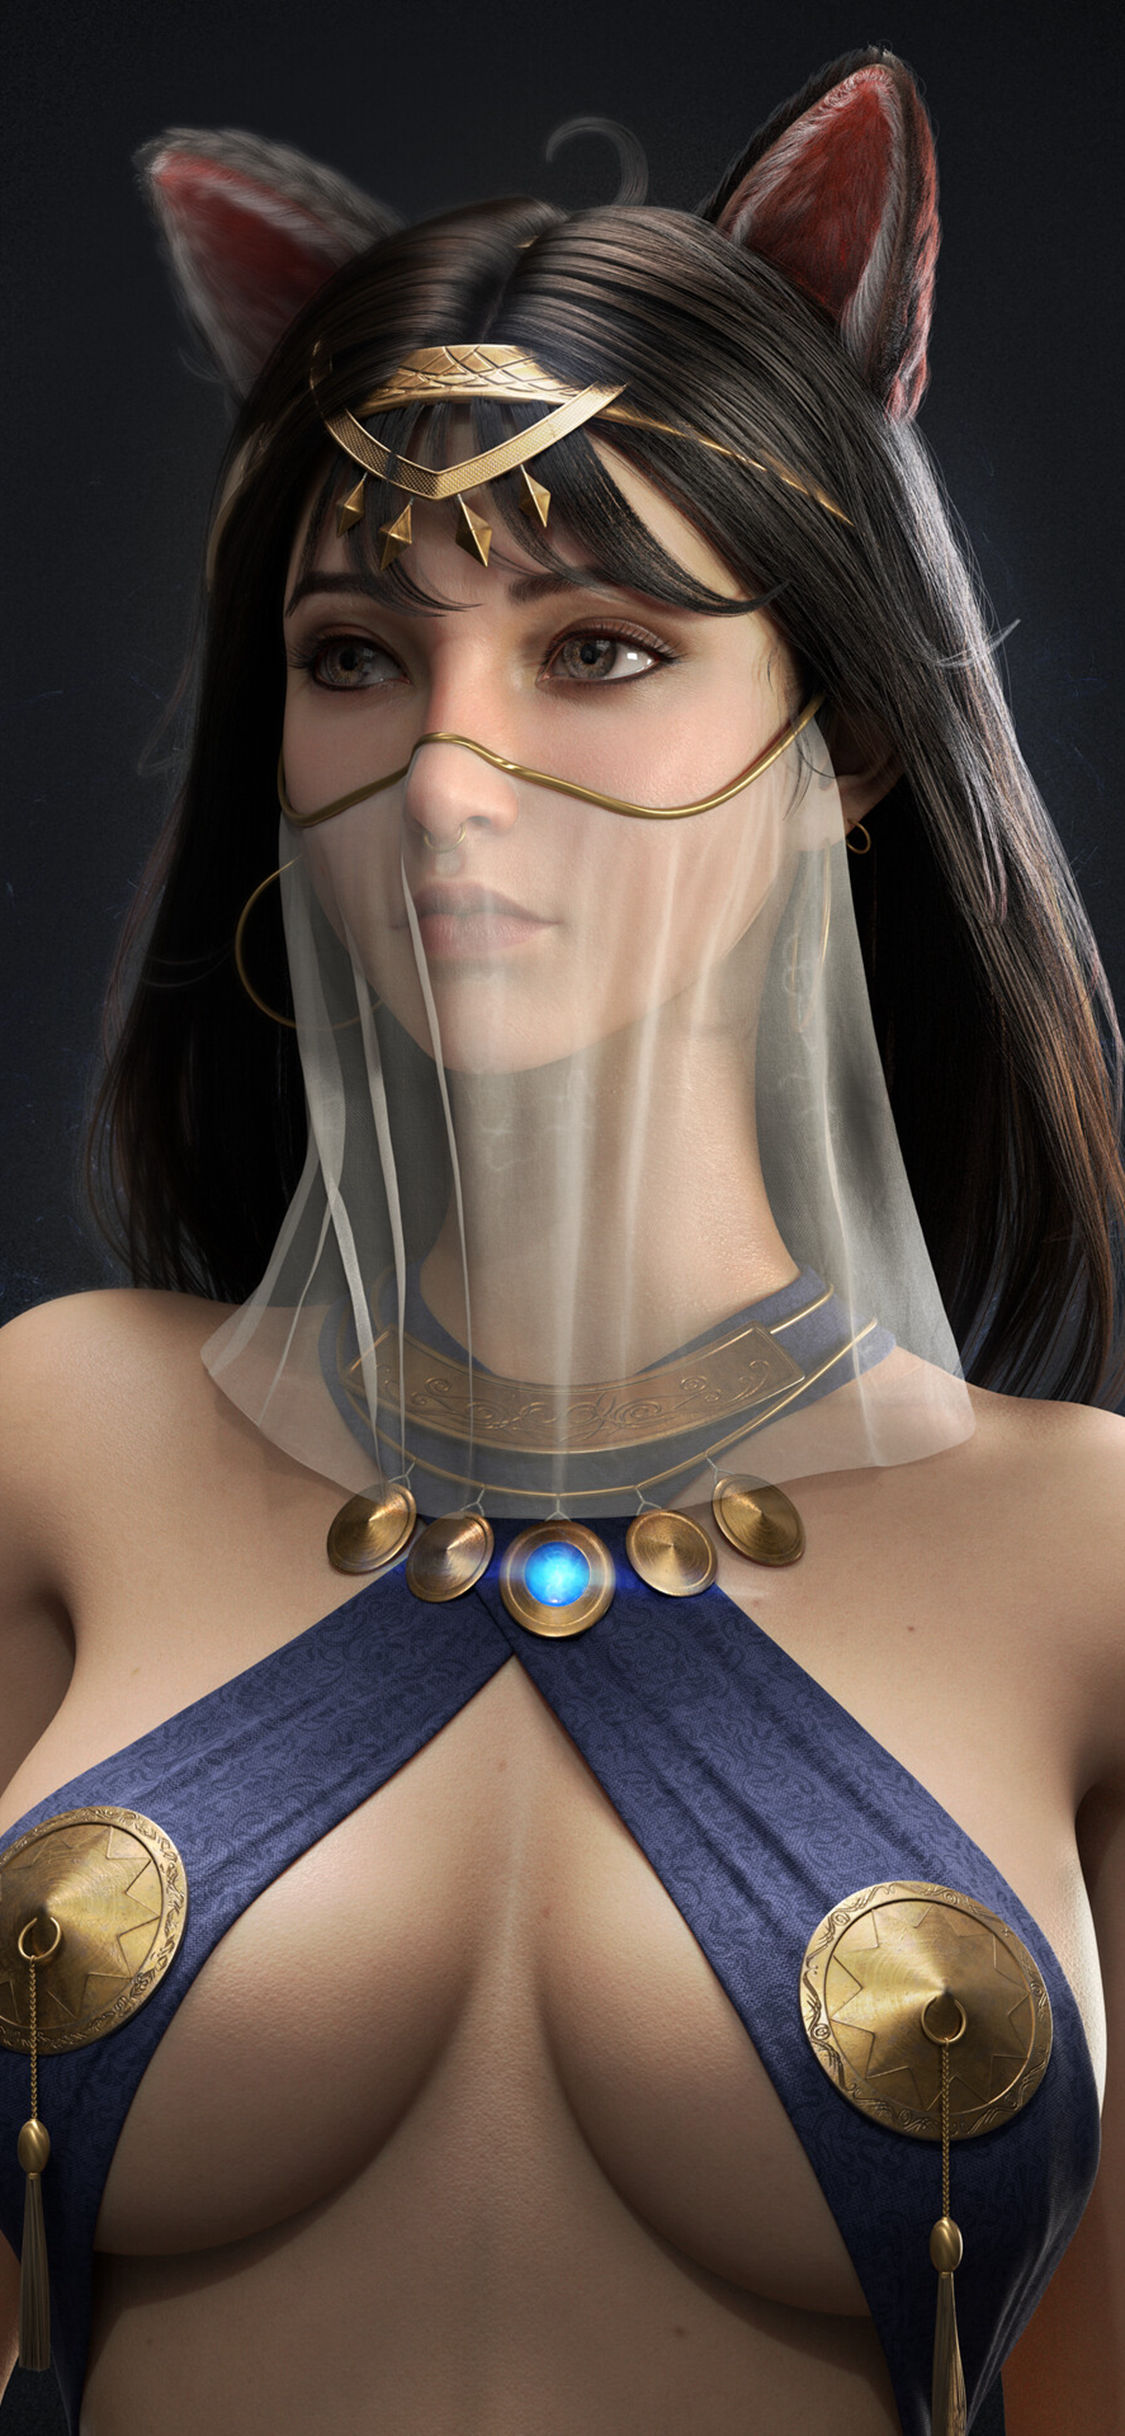 古埃及性感美女3D人物肖像效果图片手机壁纸